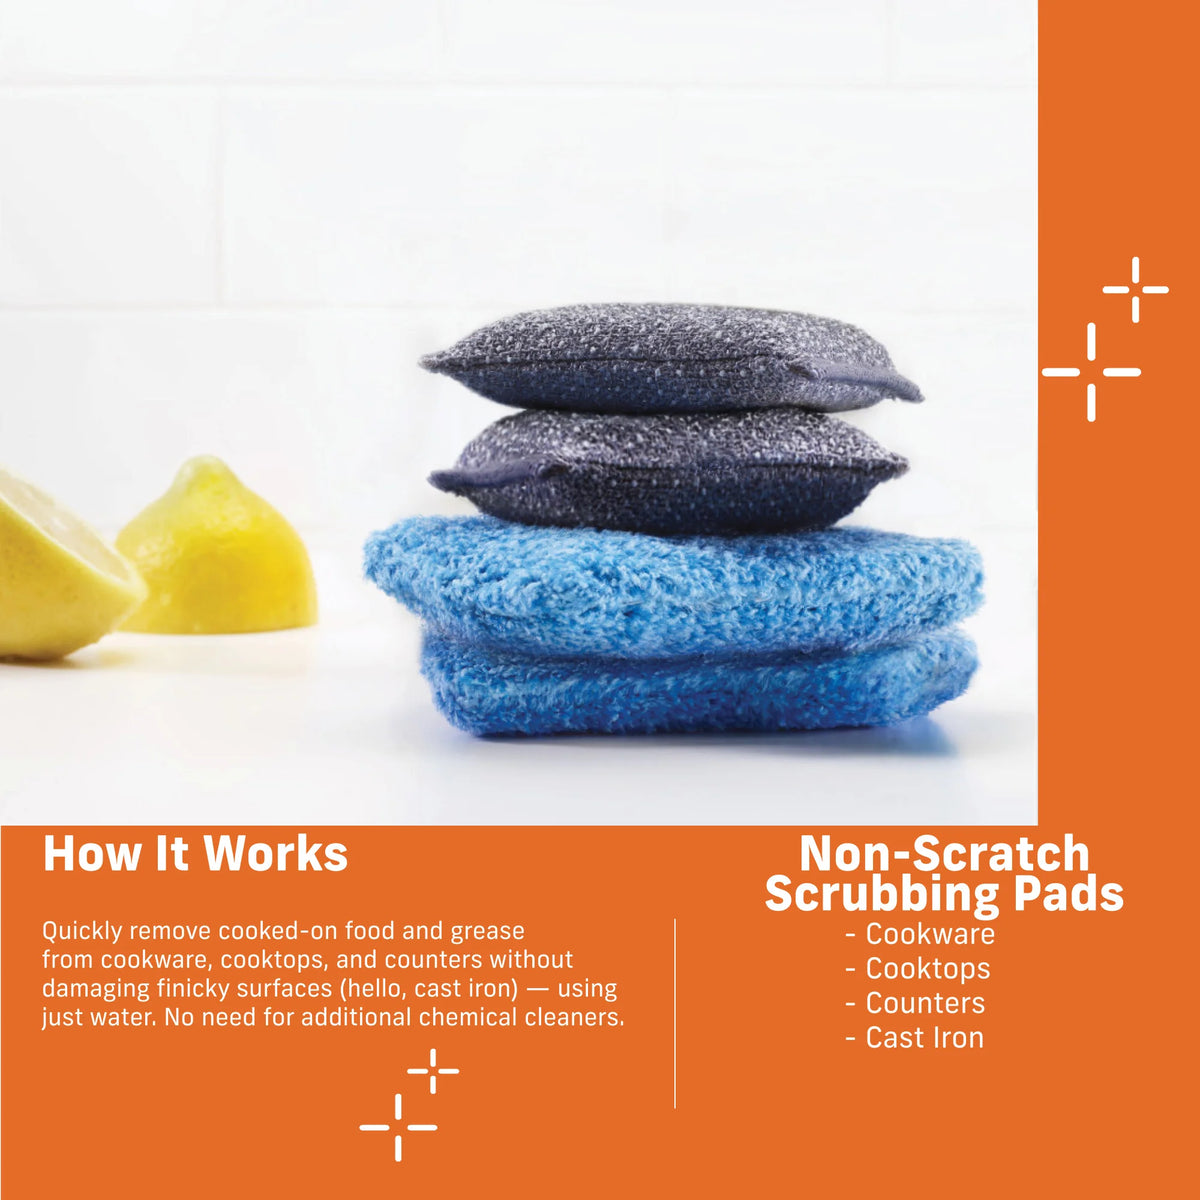 2 Non-Scratch Scrubbing Pads